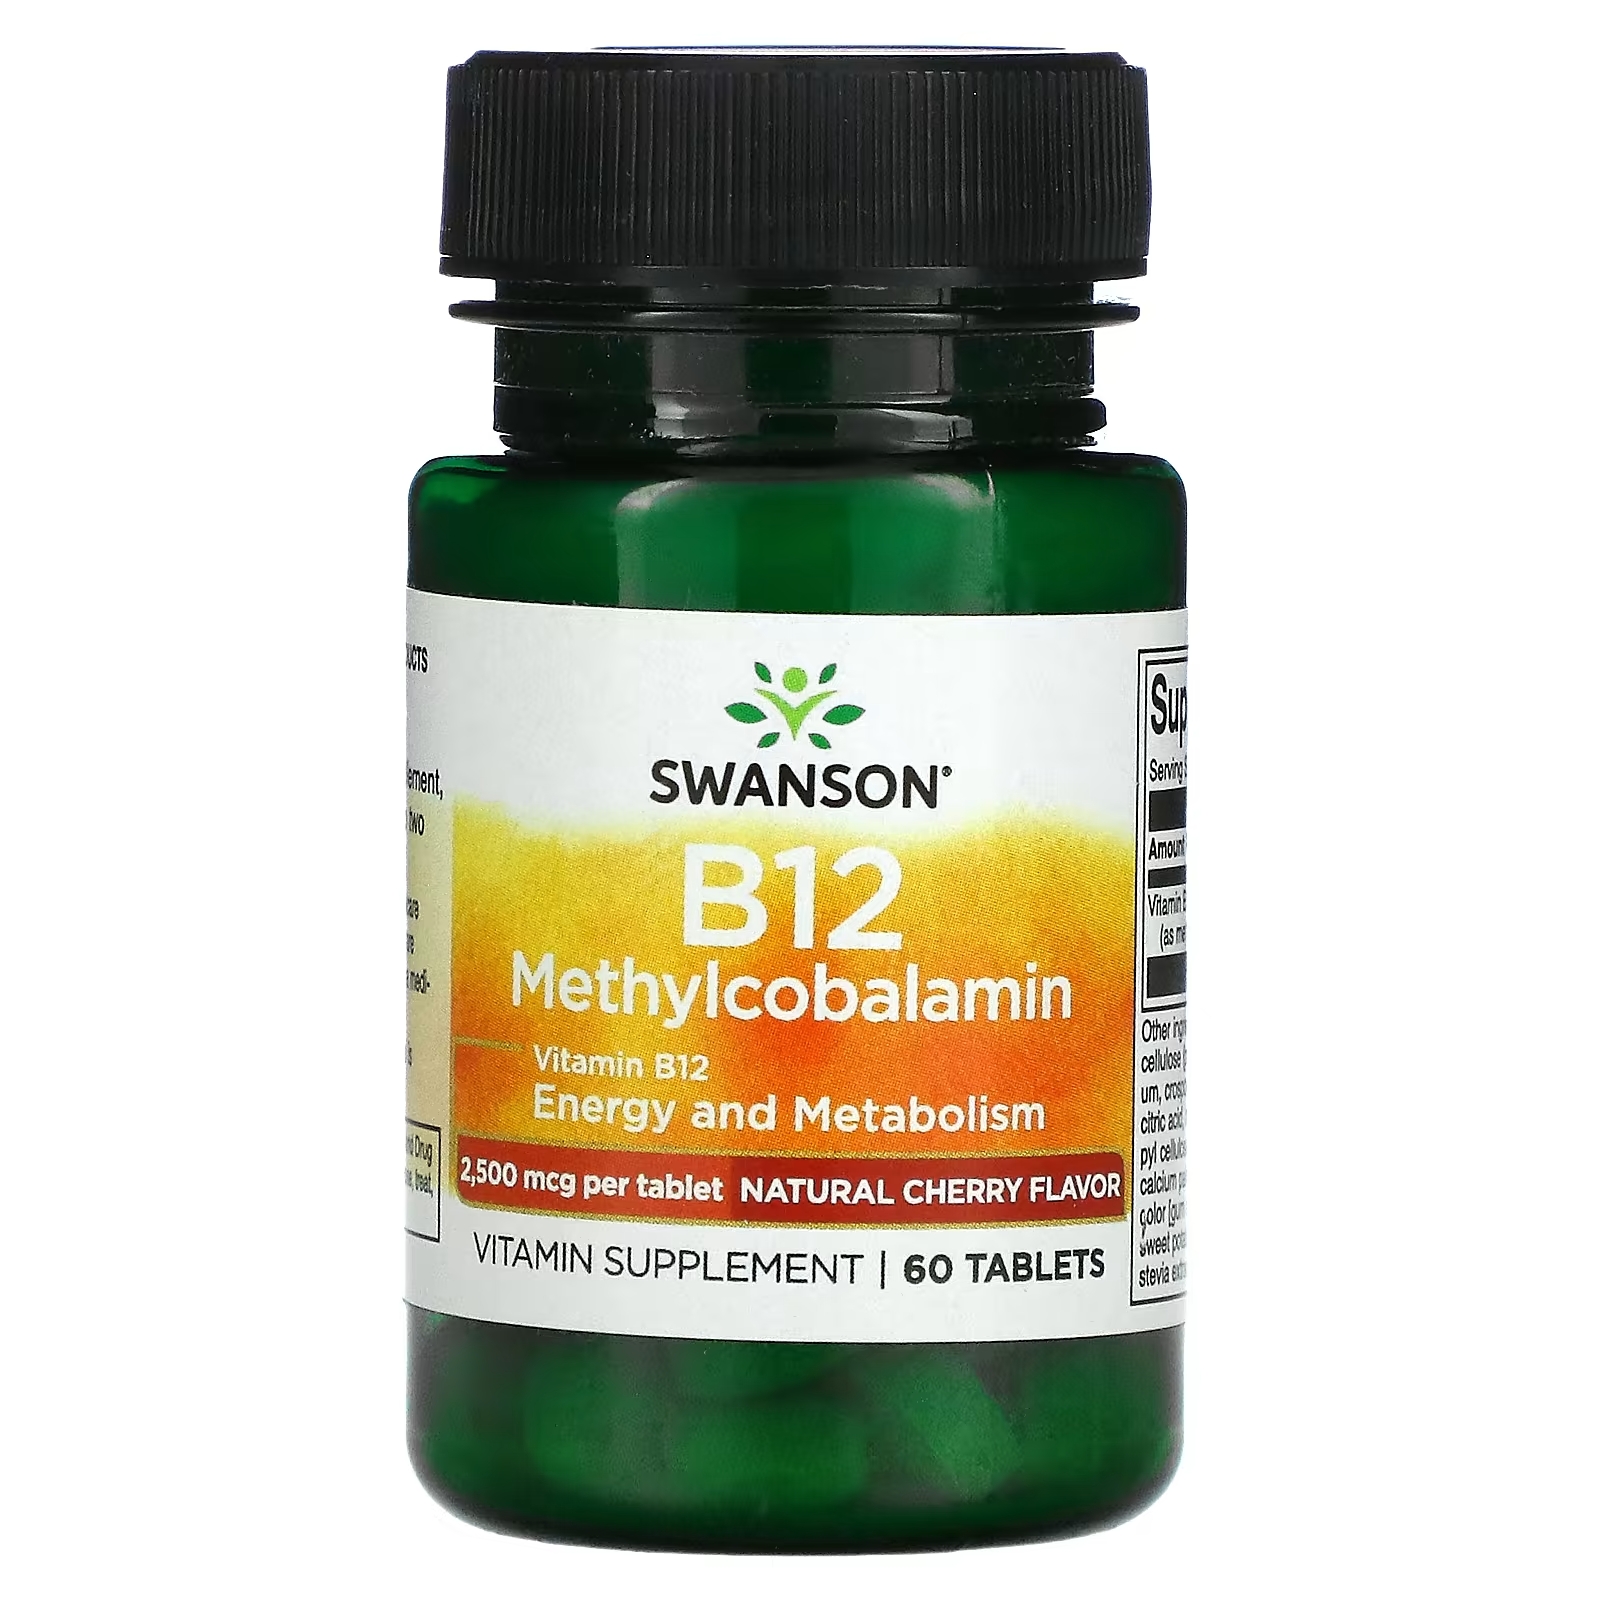 Swanson B12 метилкобаламин вишня, 60 таблеток